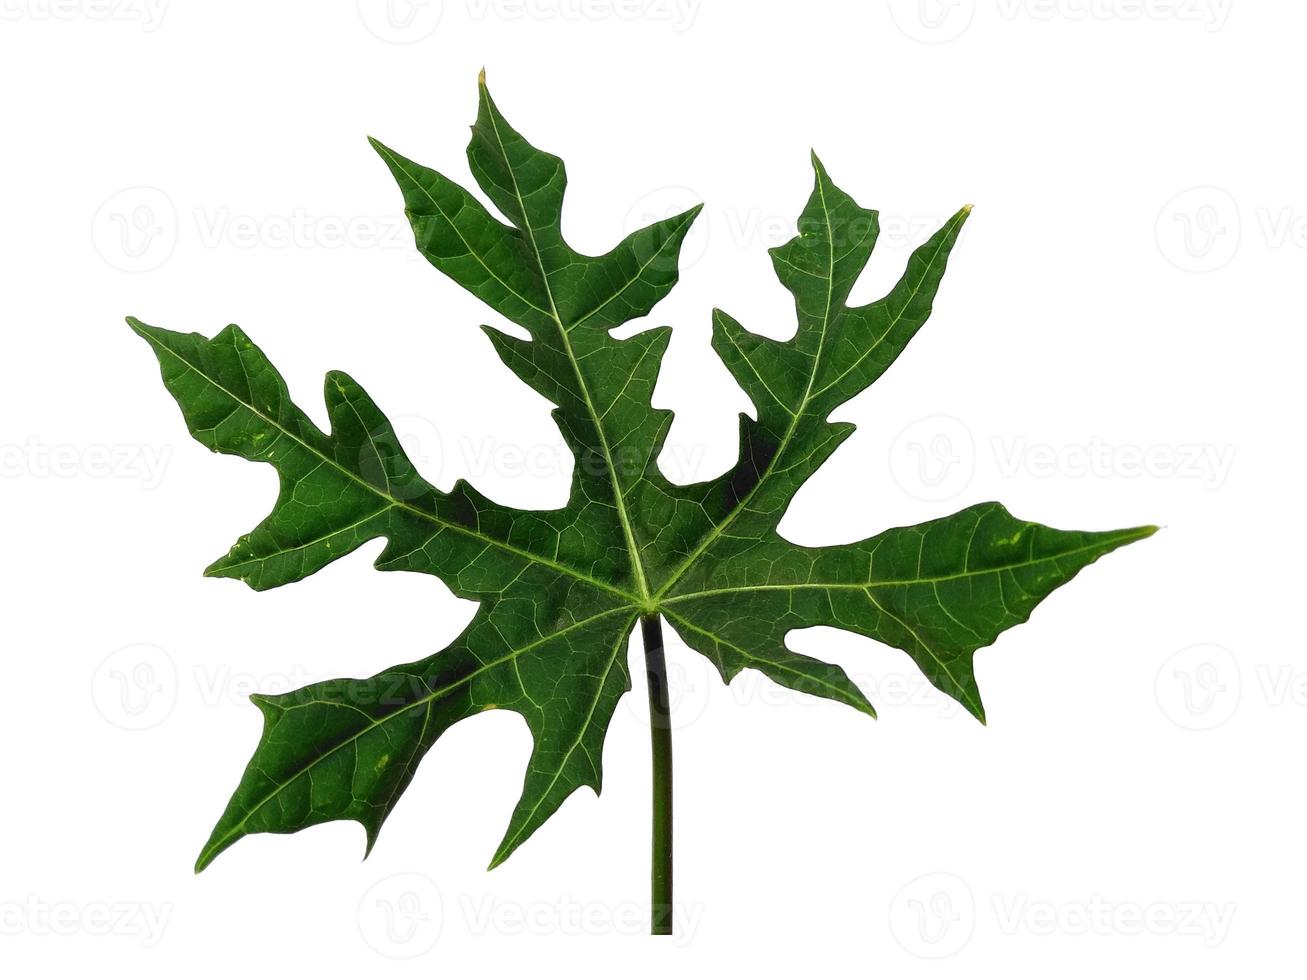 cnidoscolus aconitifolius Blatt isoliert auf weißem Hintergrund. grüne Blätter auf weißem Hintergrund foto